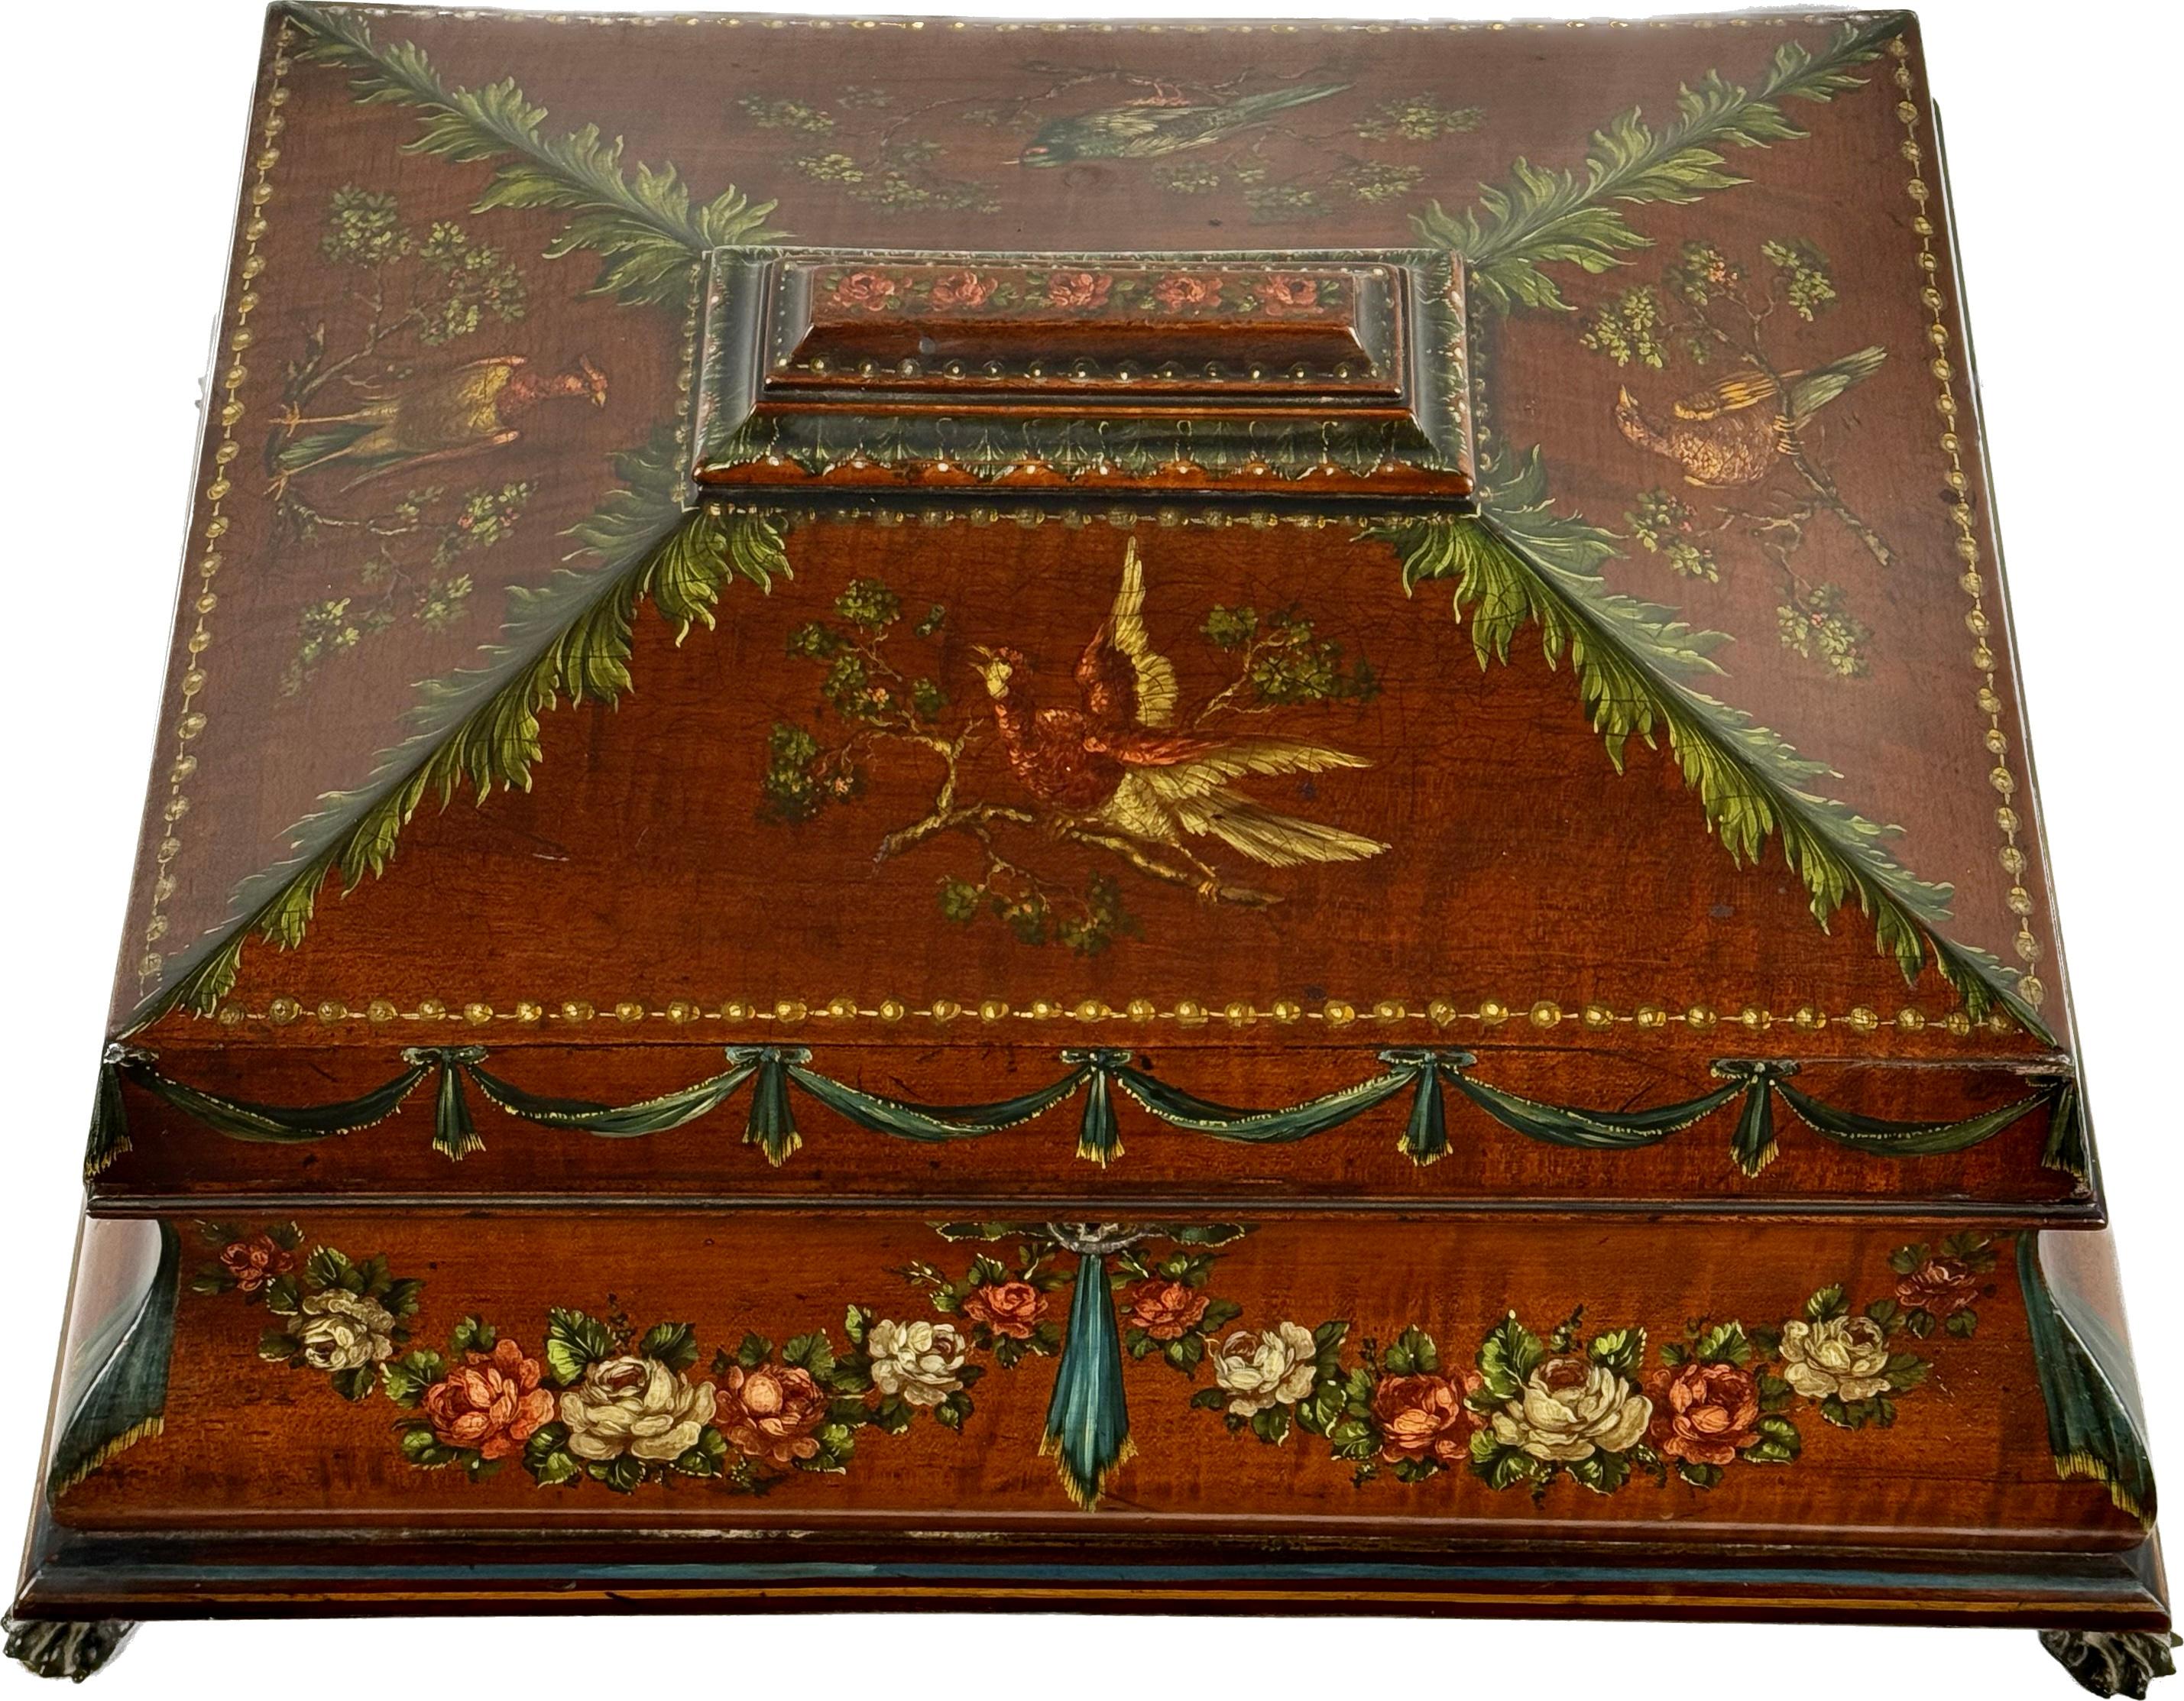 Coffret anglais unique en bois satiné peint du 19e siècle. La boîte est ornée d'un motif floral et d'un ruban coloré avec des oiseaux exotiques sur un magnifique fond de bois satiné. Les motifs sont dans les tons de terre (vert, crème, rose et